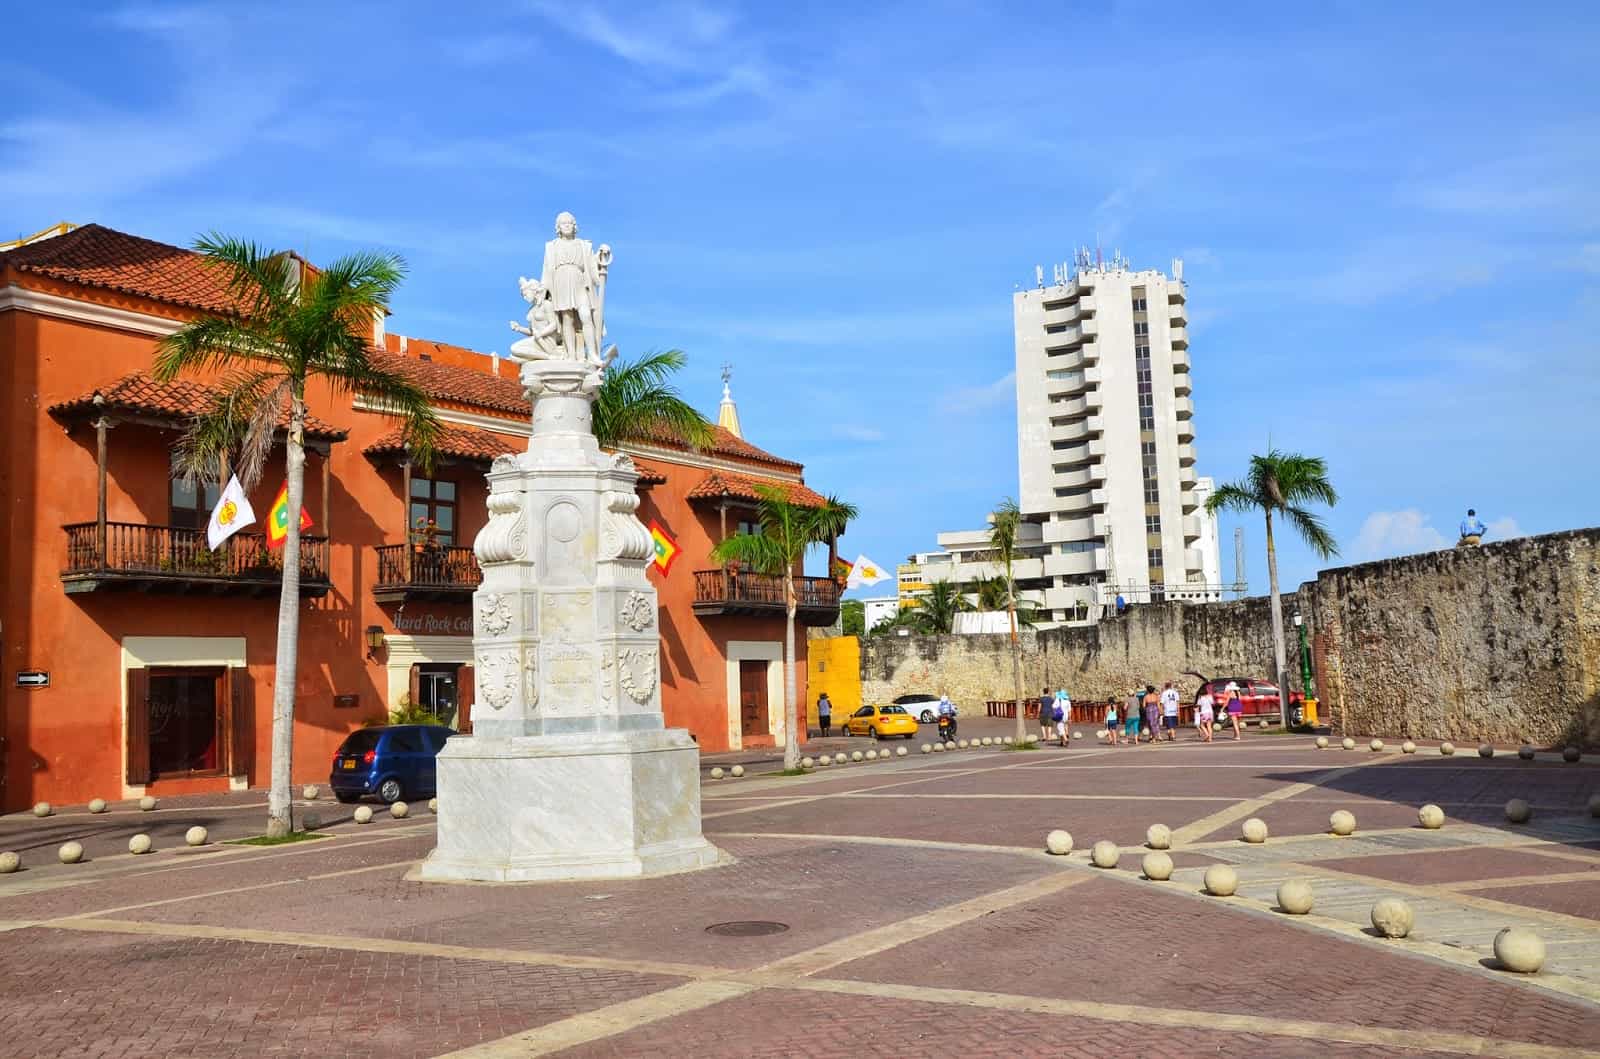 Plaza de la Aduana in El Centro, Cartagena, Bolívar, Colombia